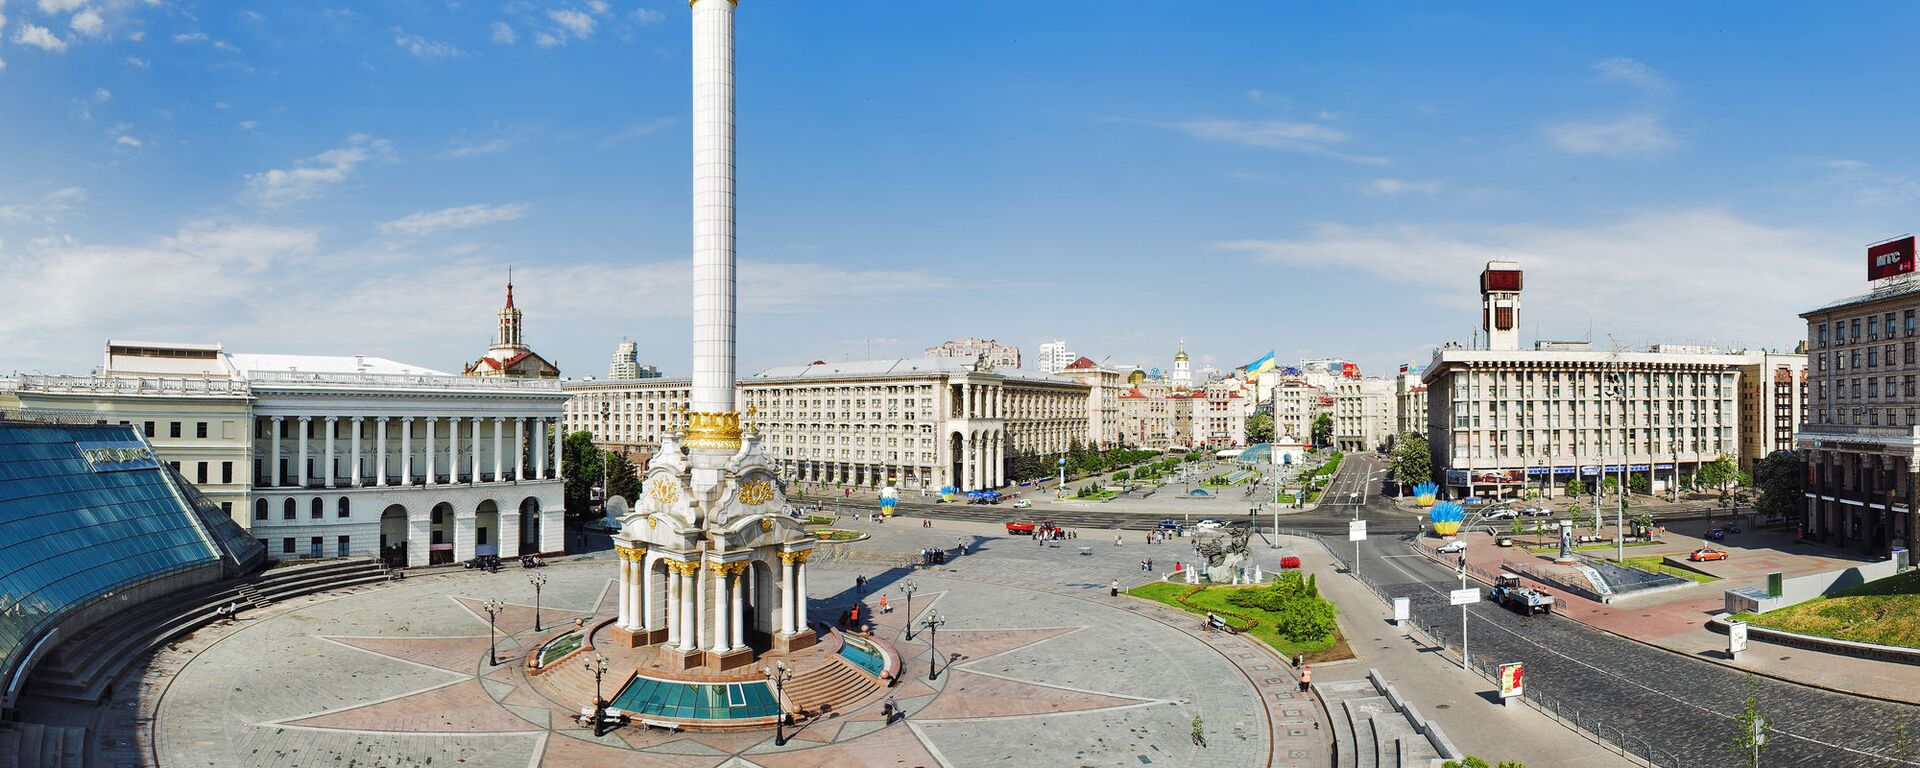 Площадь Независимости в Киеве, архивное фото - Sputnik Lietuva, 1920, 22.07.2021